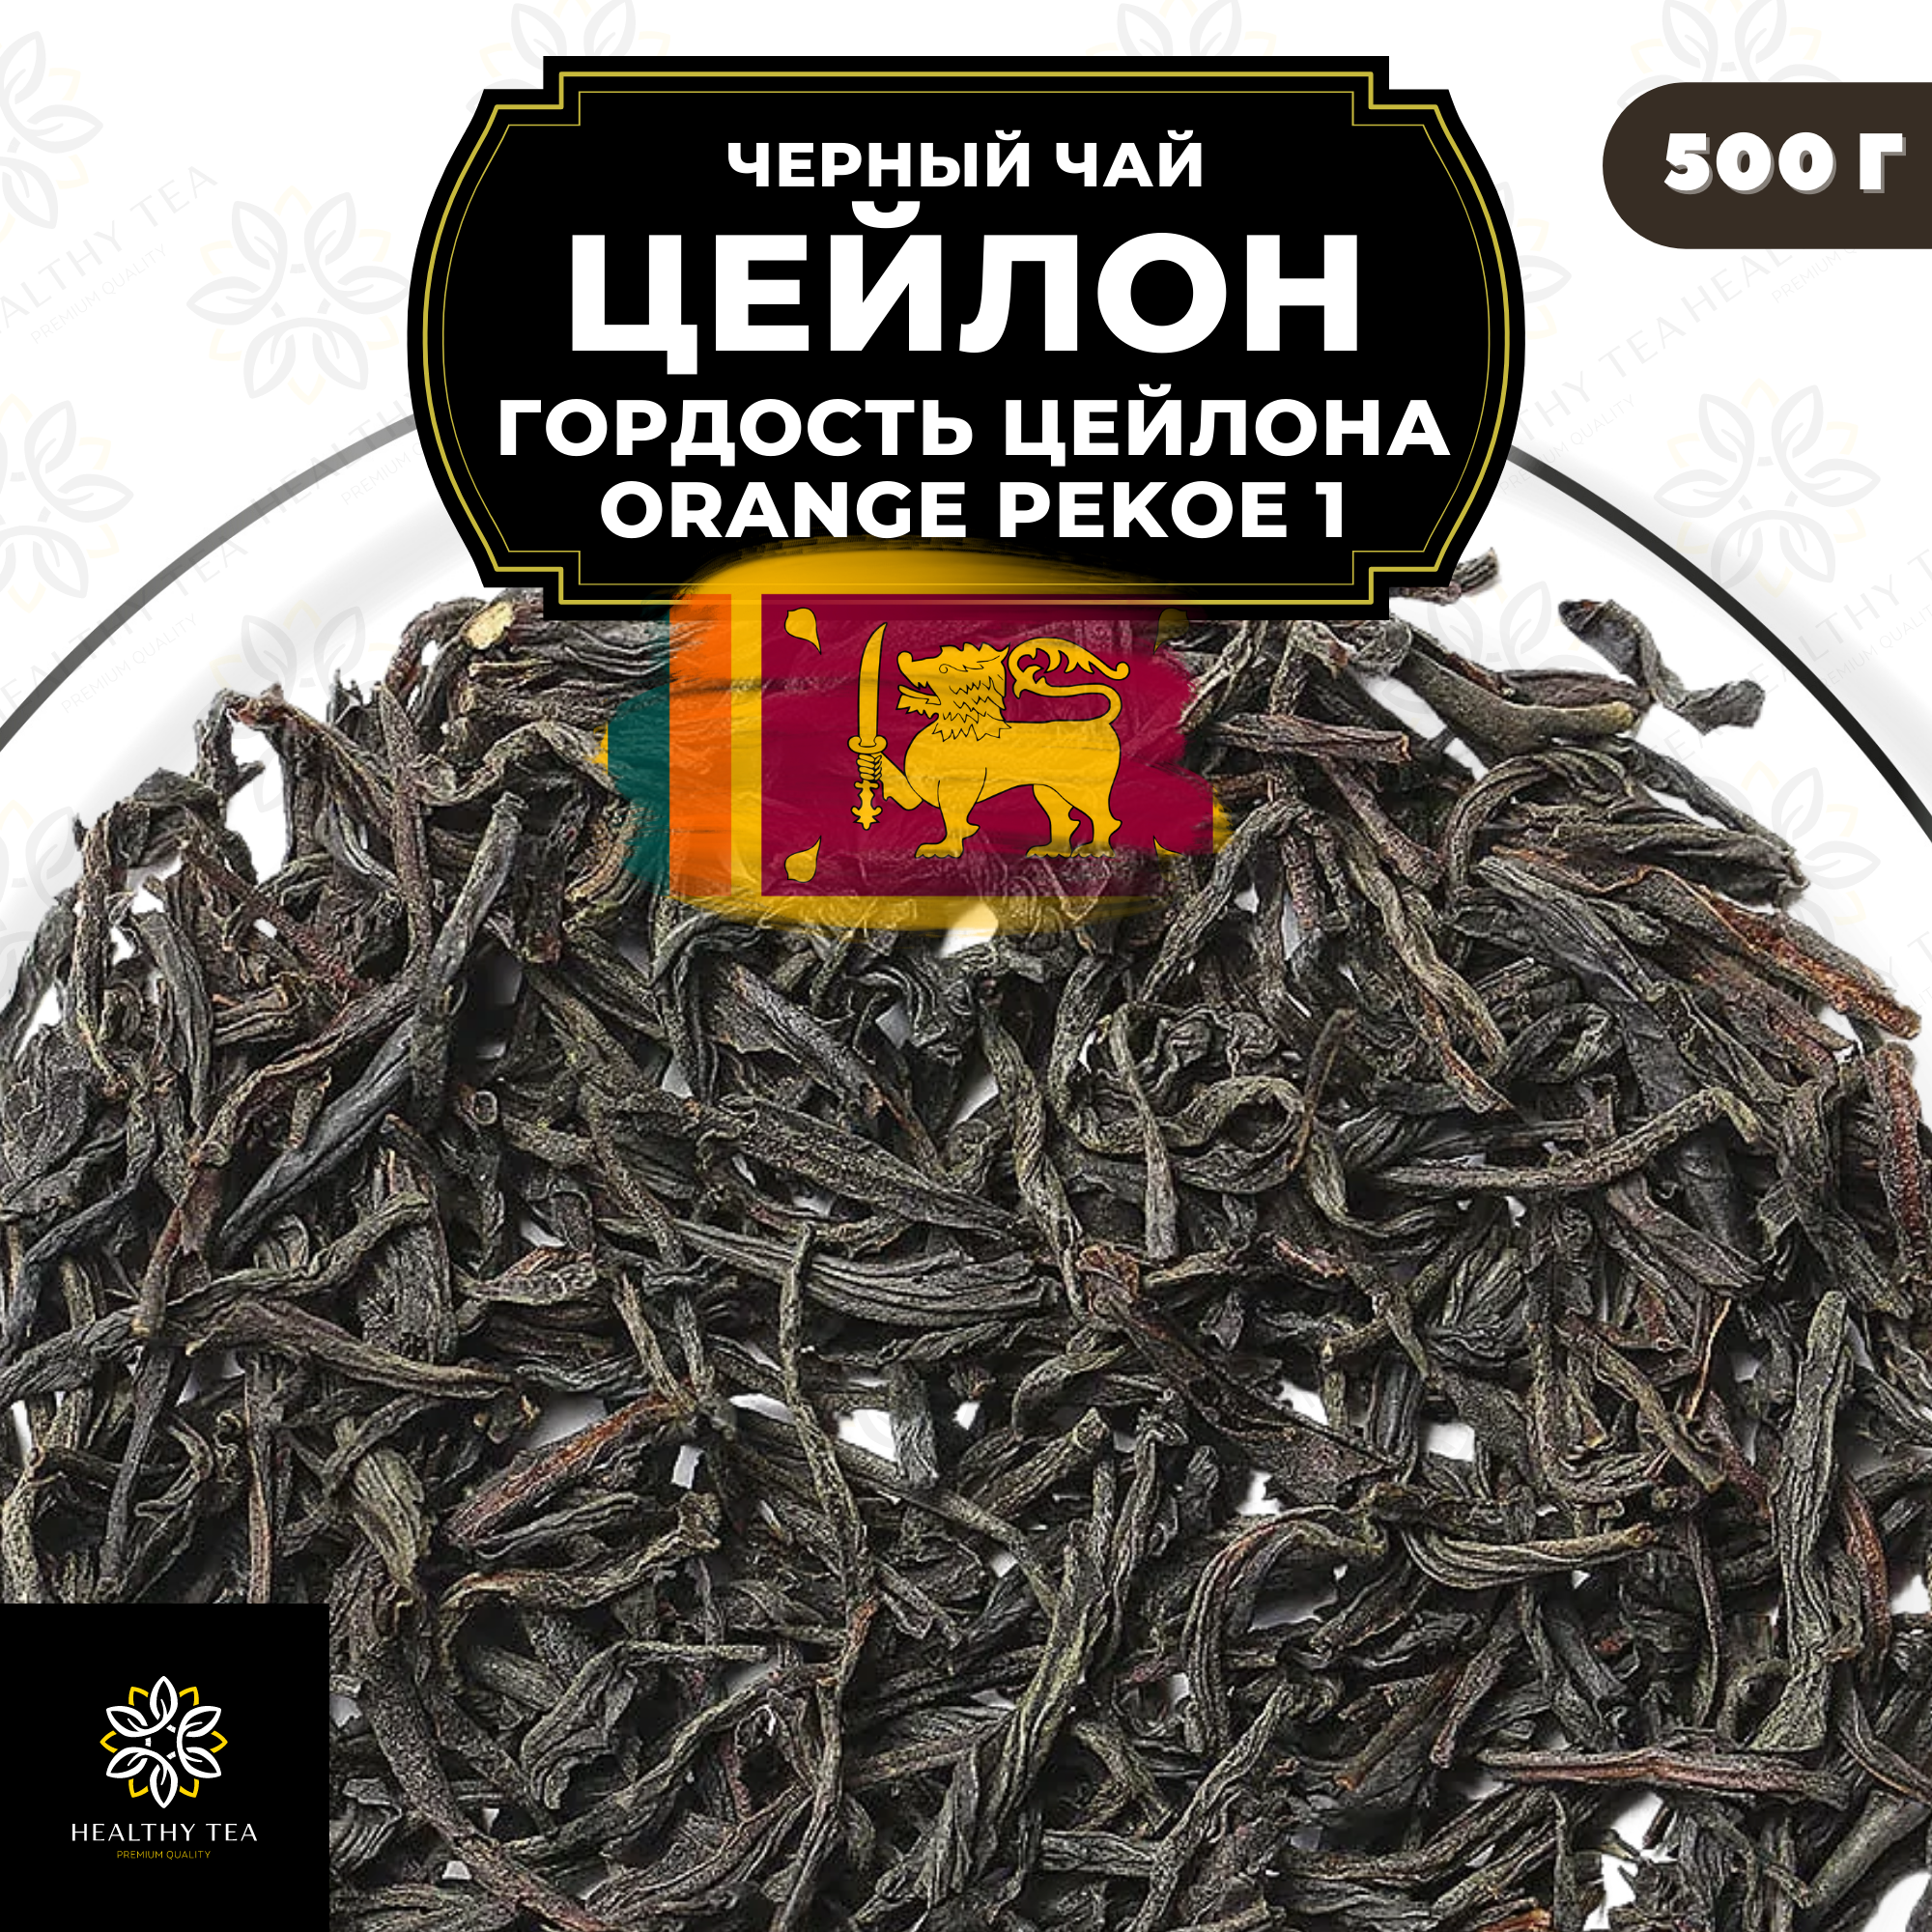 Черный листовой чай Цейлон Гордость Цейлона (ОР1) Полезный чай / HEALTHY TEA, 500 гр